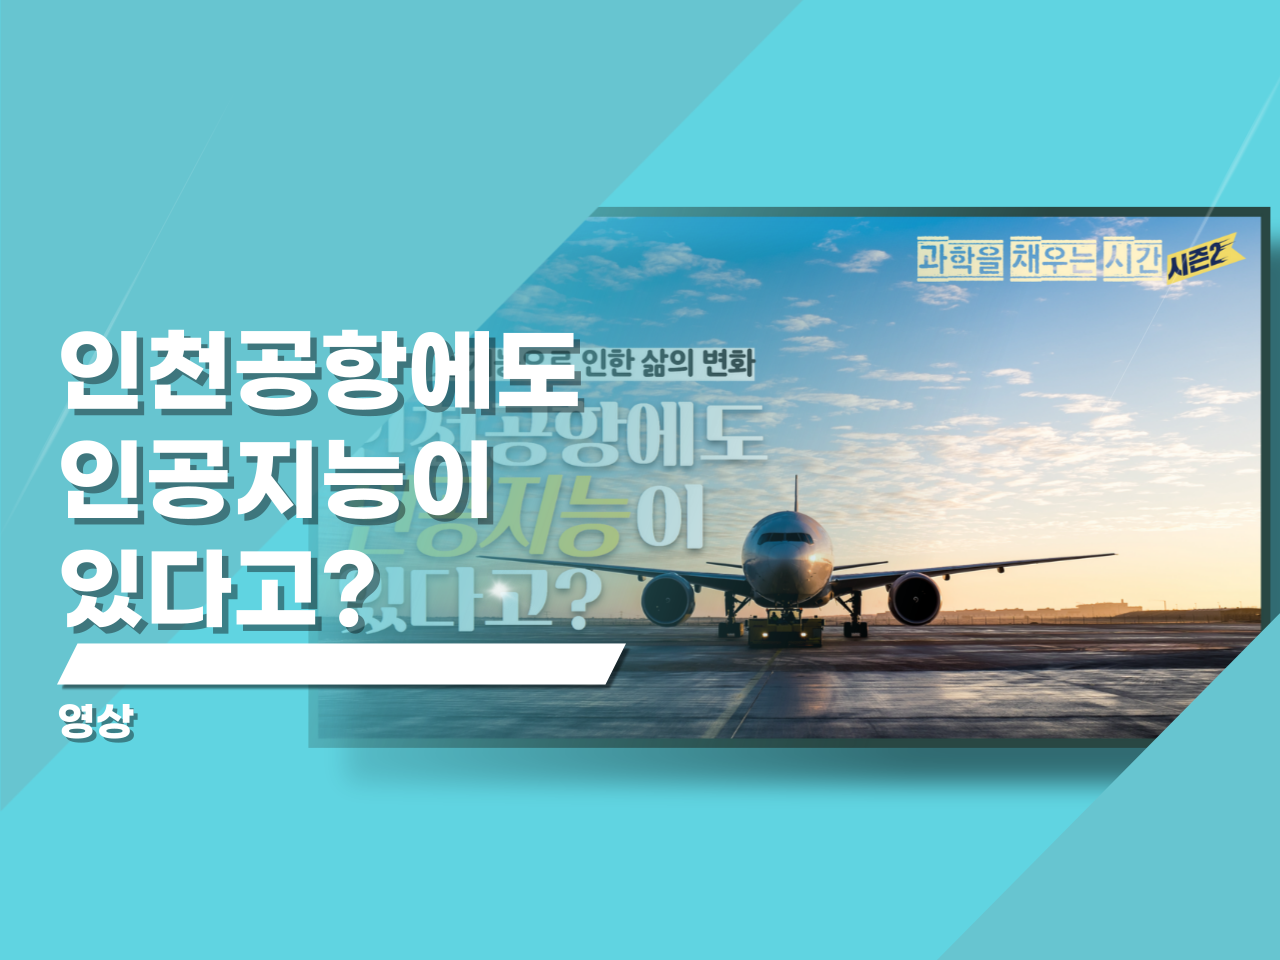 인천 공항에도 인공지능이 있다고?